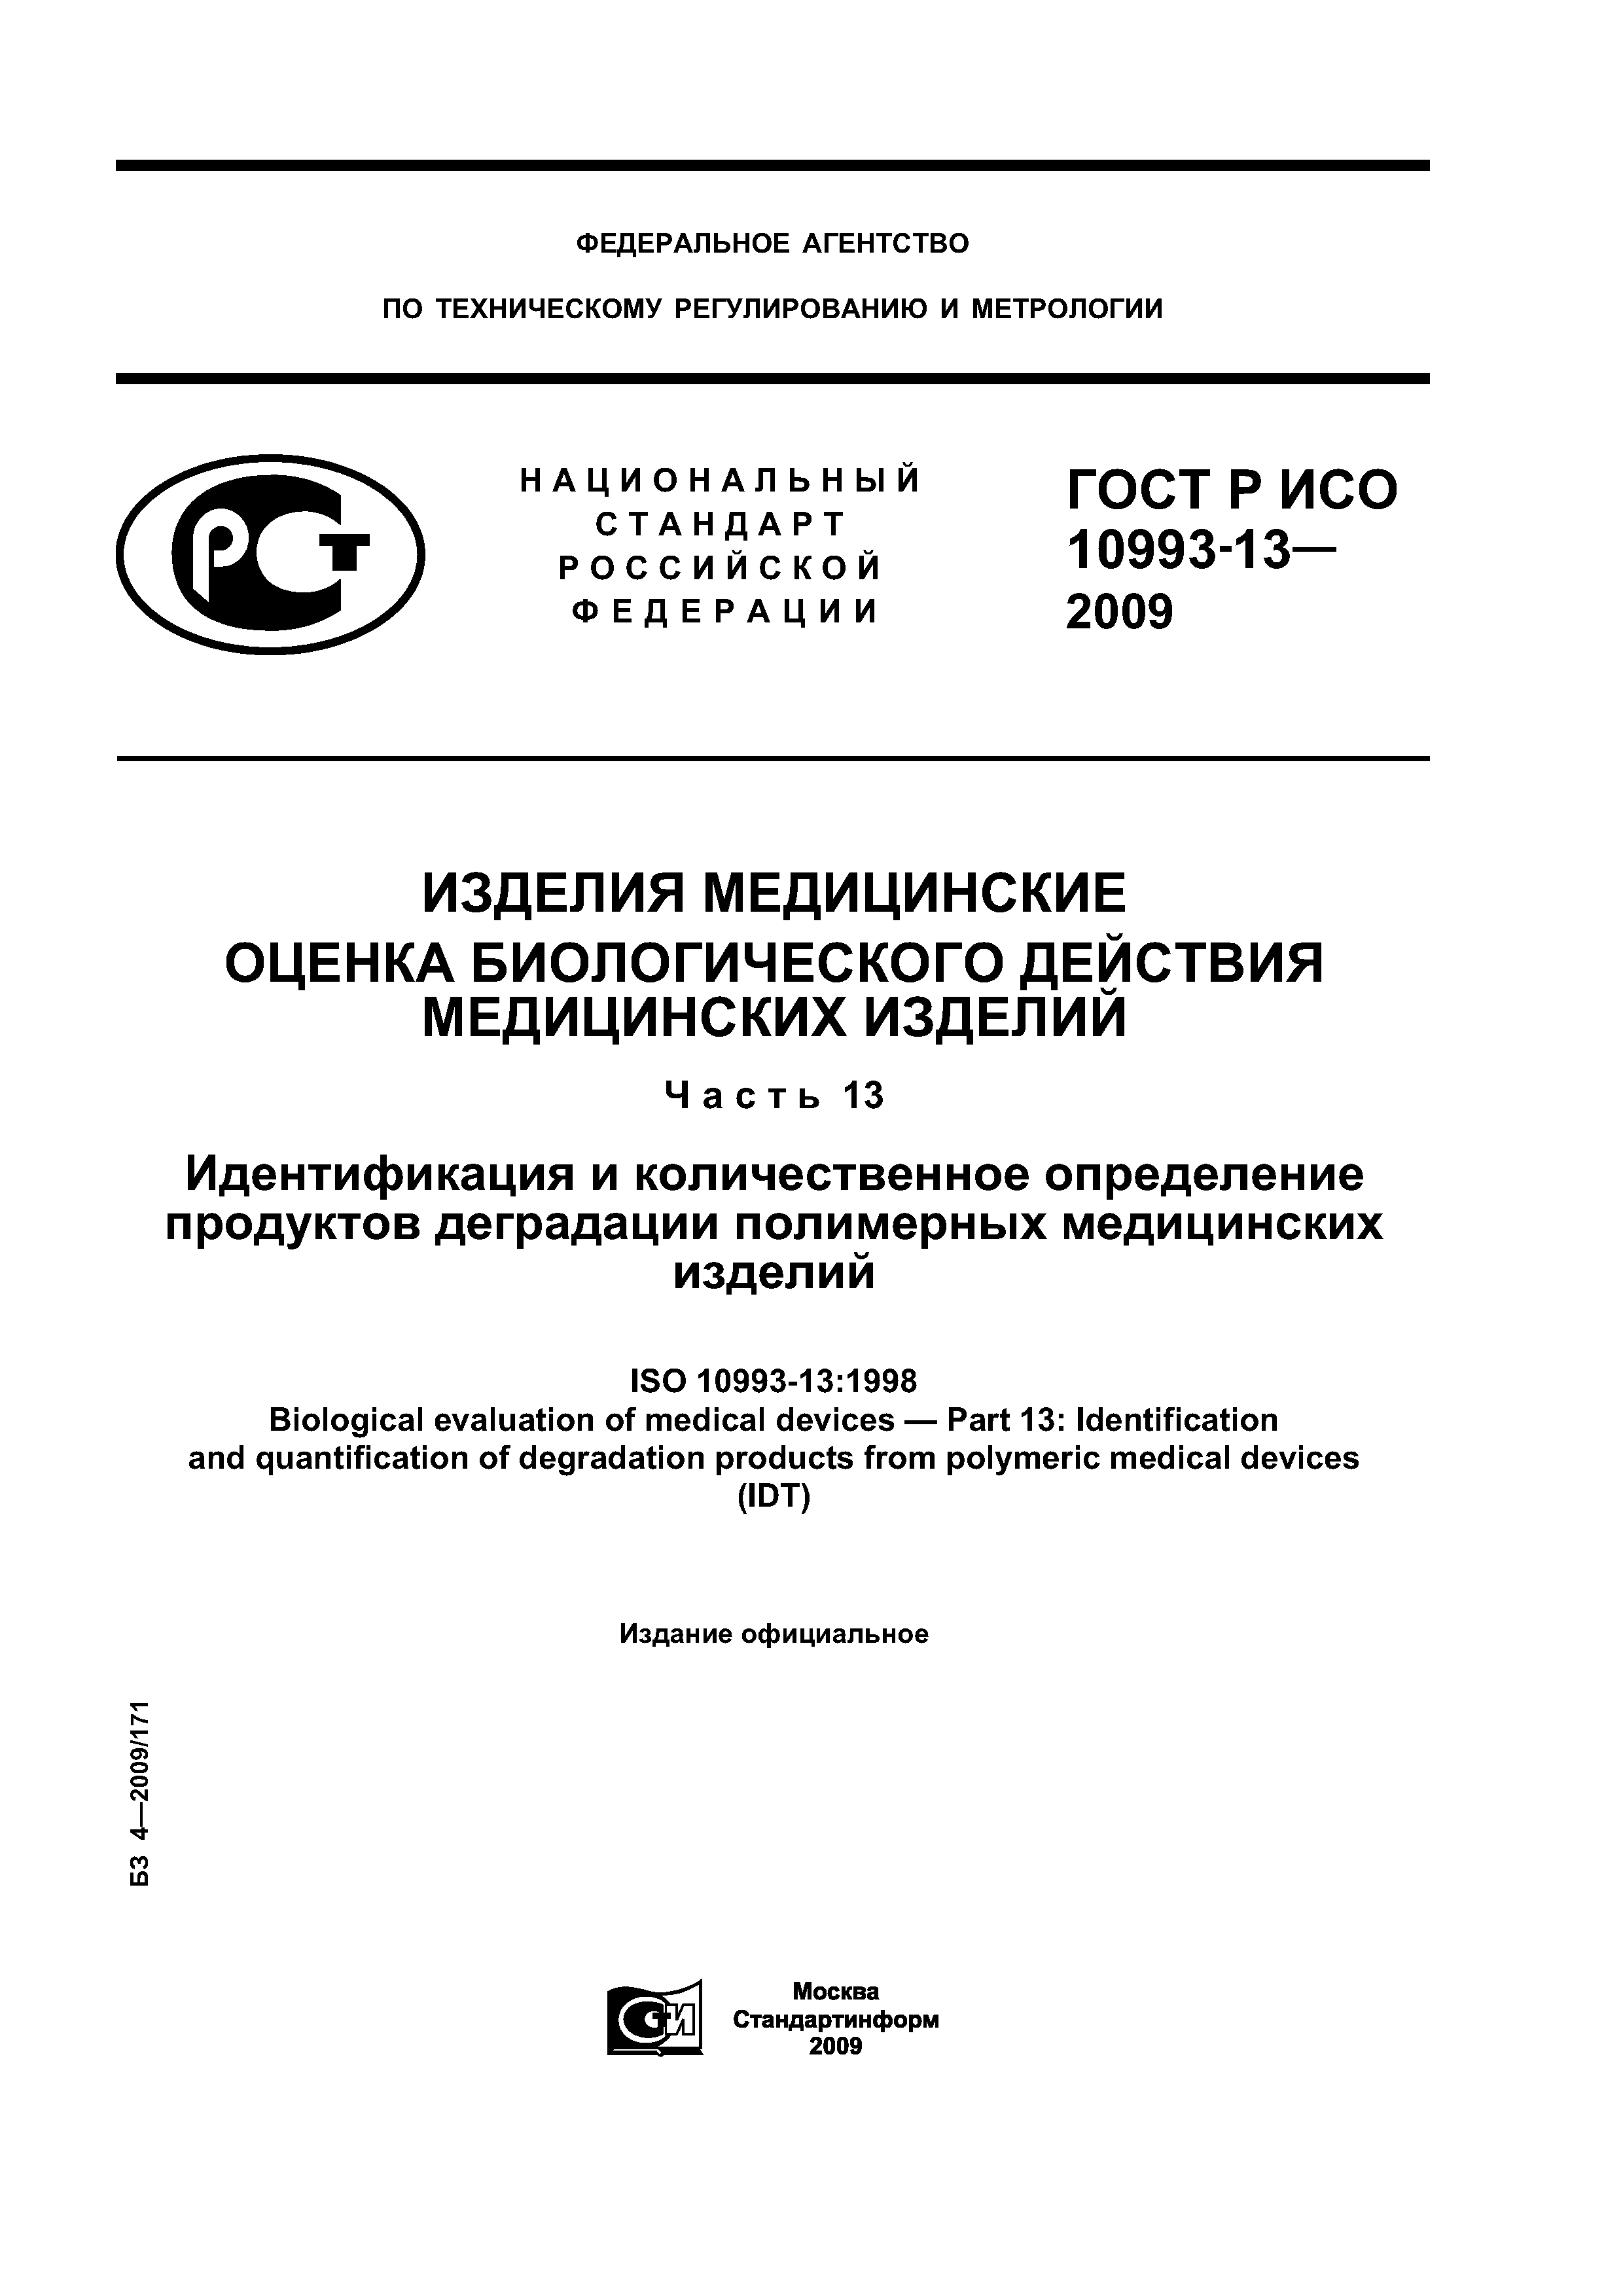 ГОСТ Р ИСО 10993-13-2009